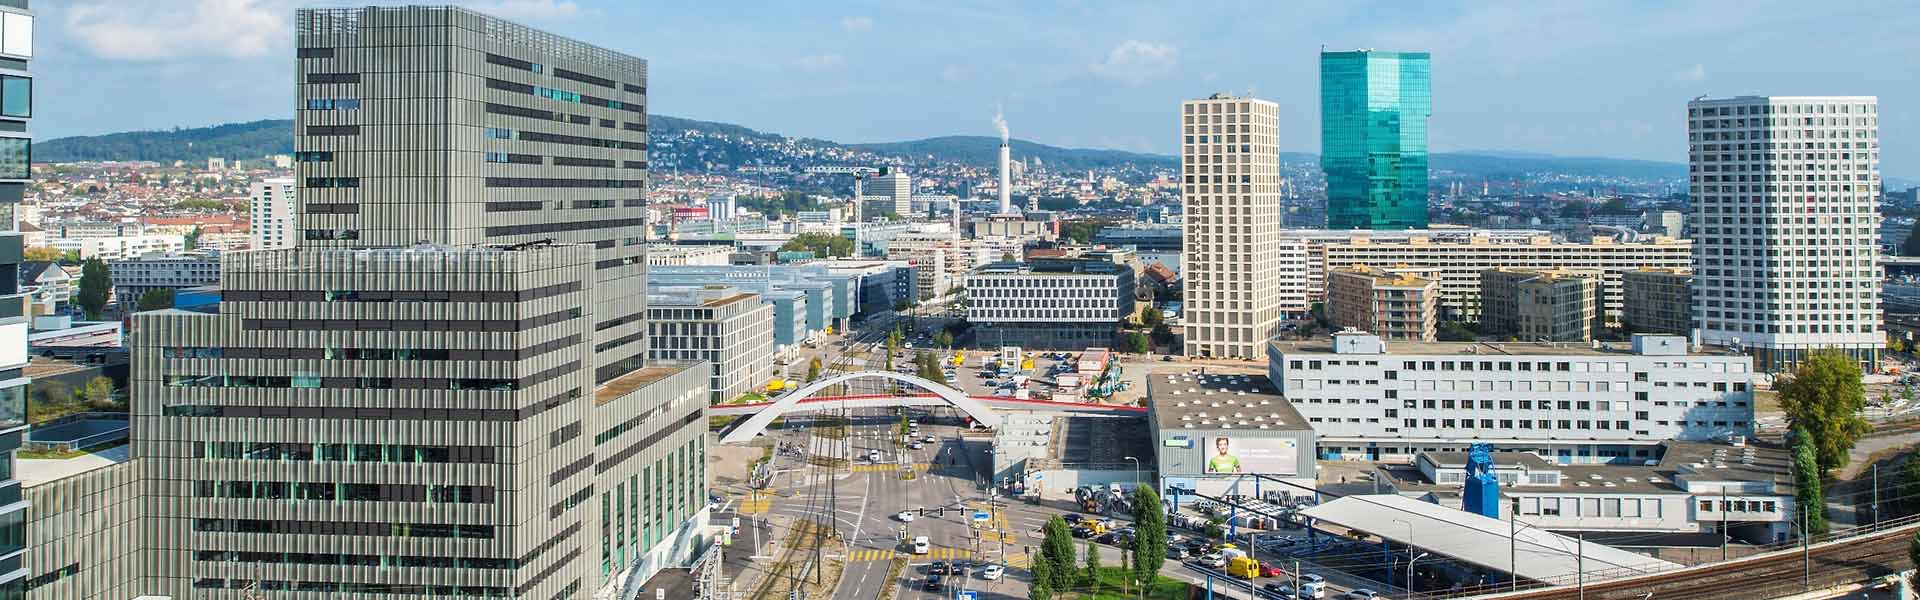 Top Escort Schweiz | Escort Hochschulen